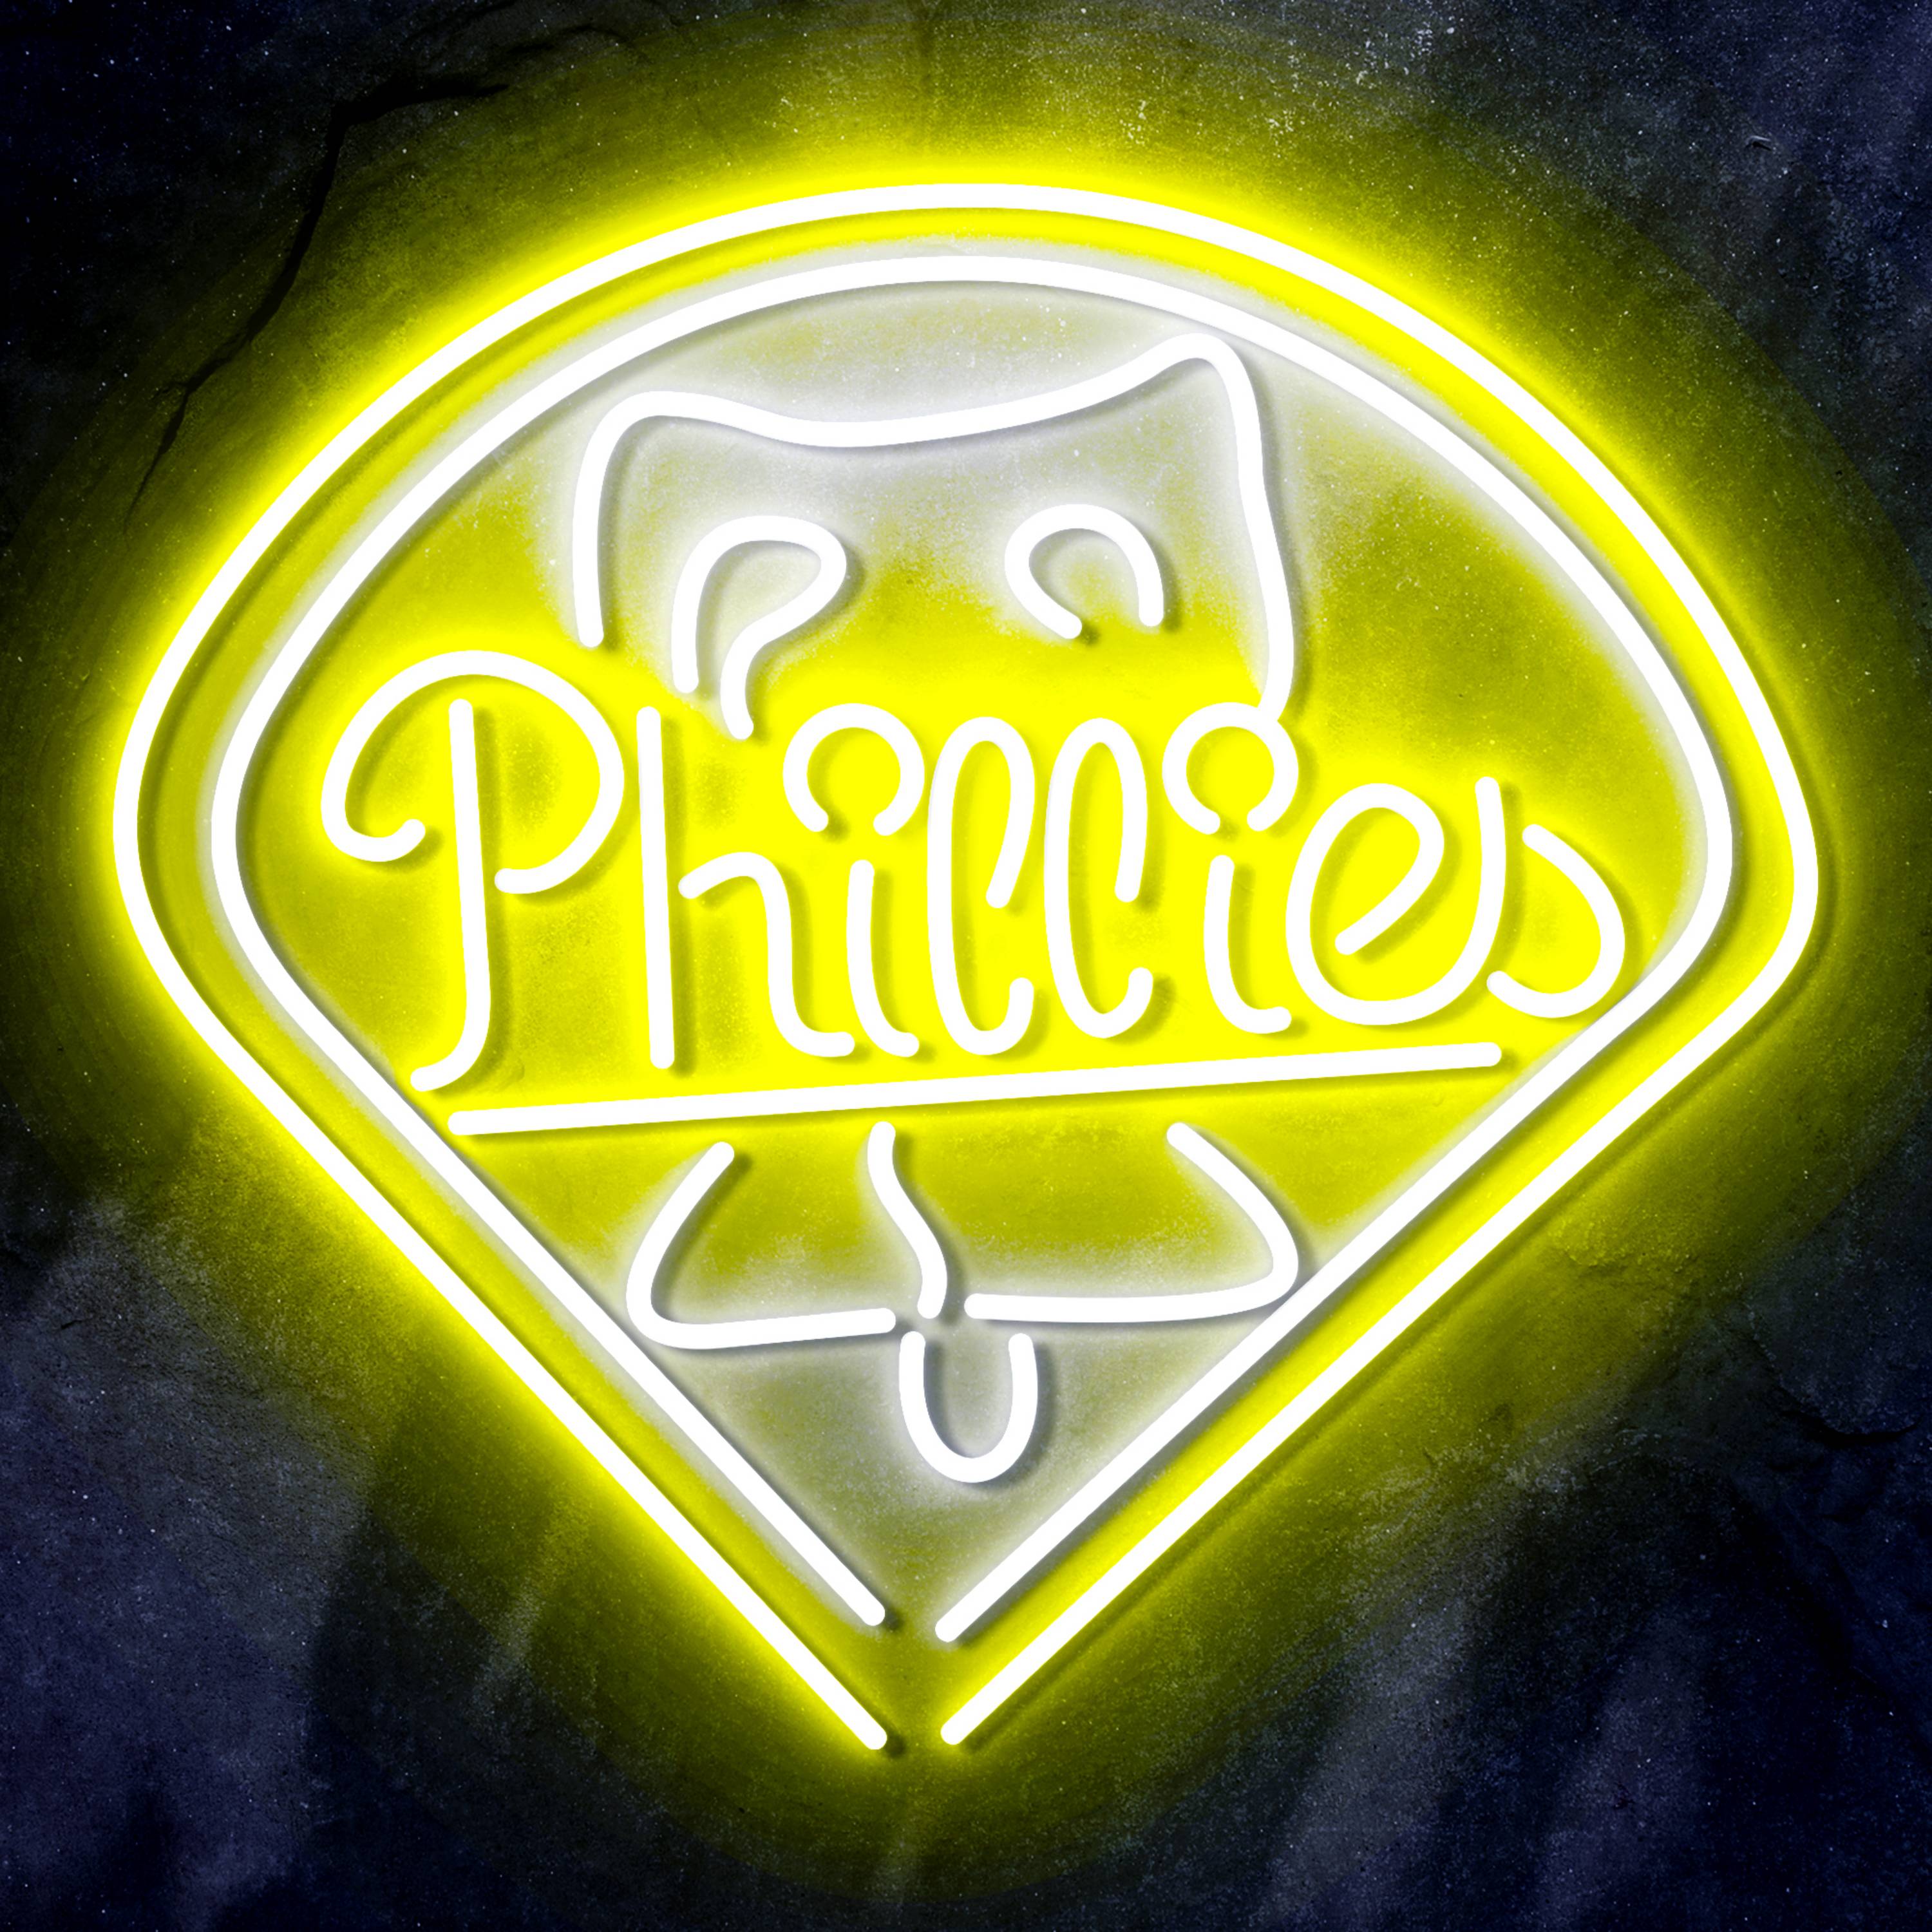 MLB Philadelphia Phillies Bar Neon Flex LED Sign